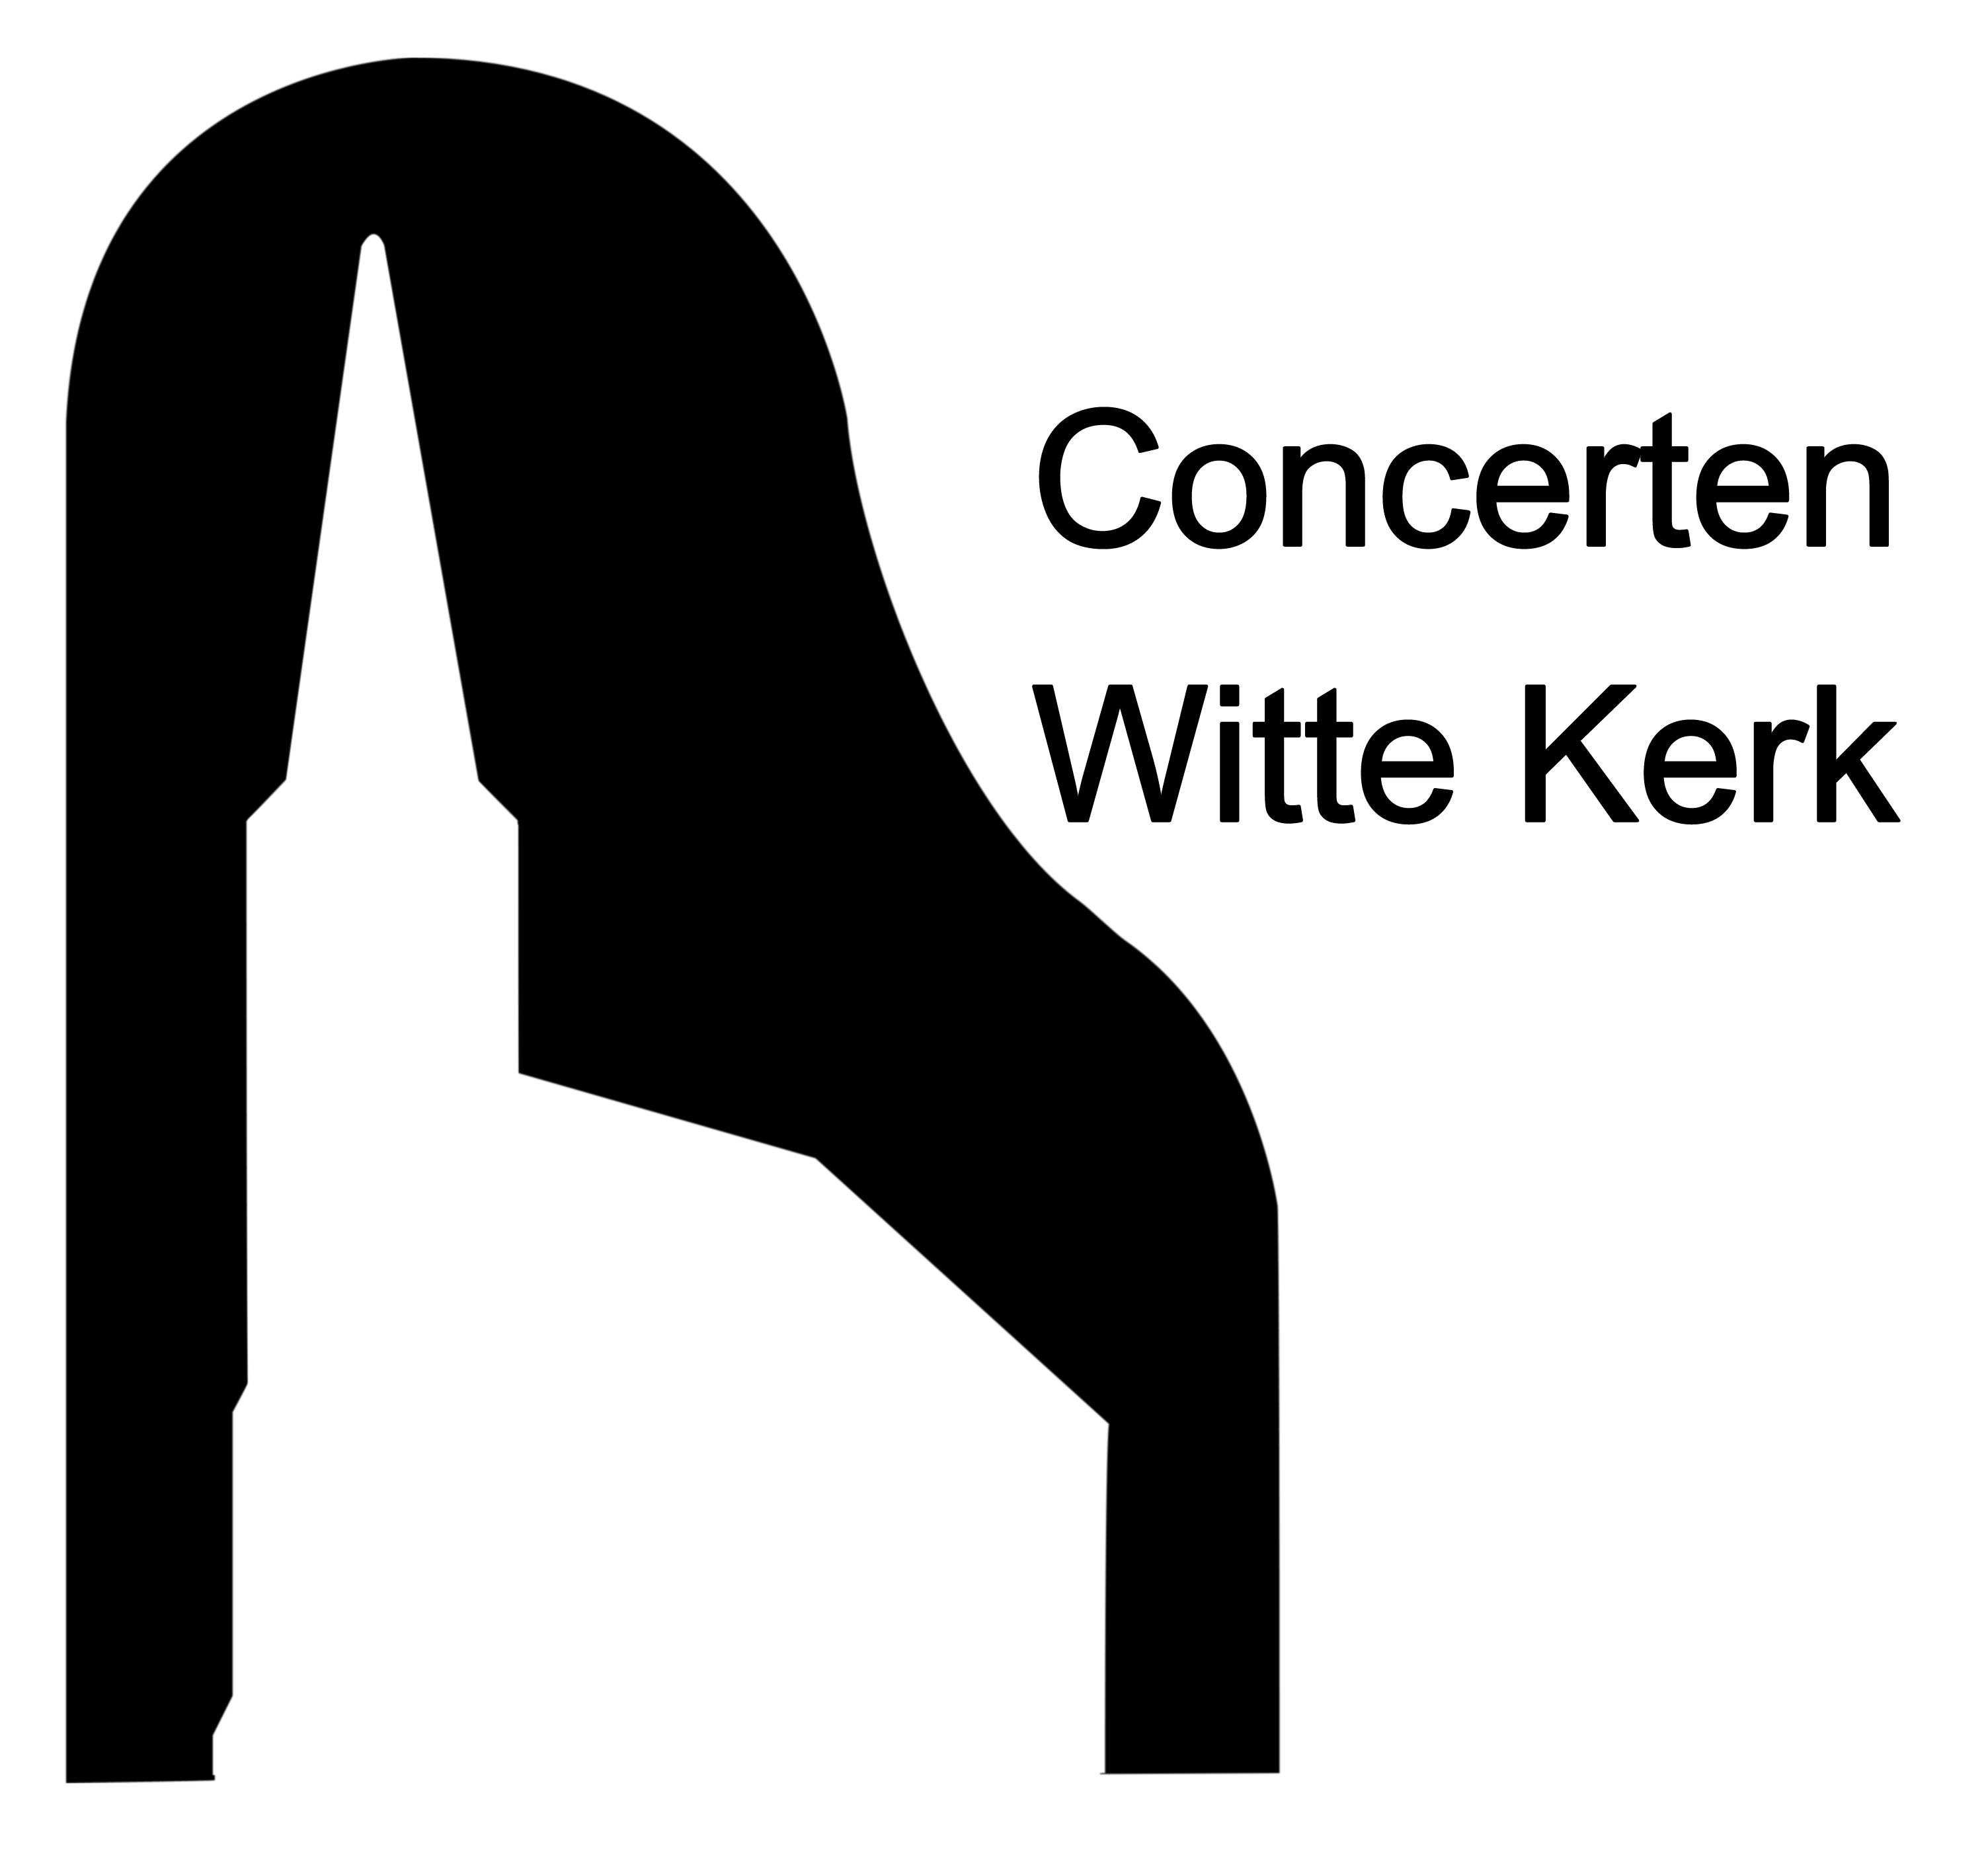 Concerten Witte Kerk